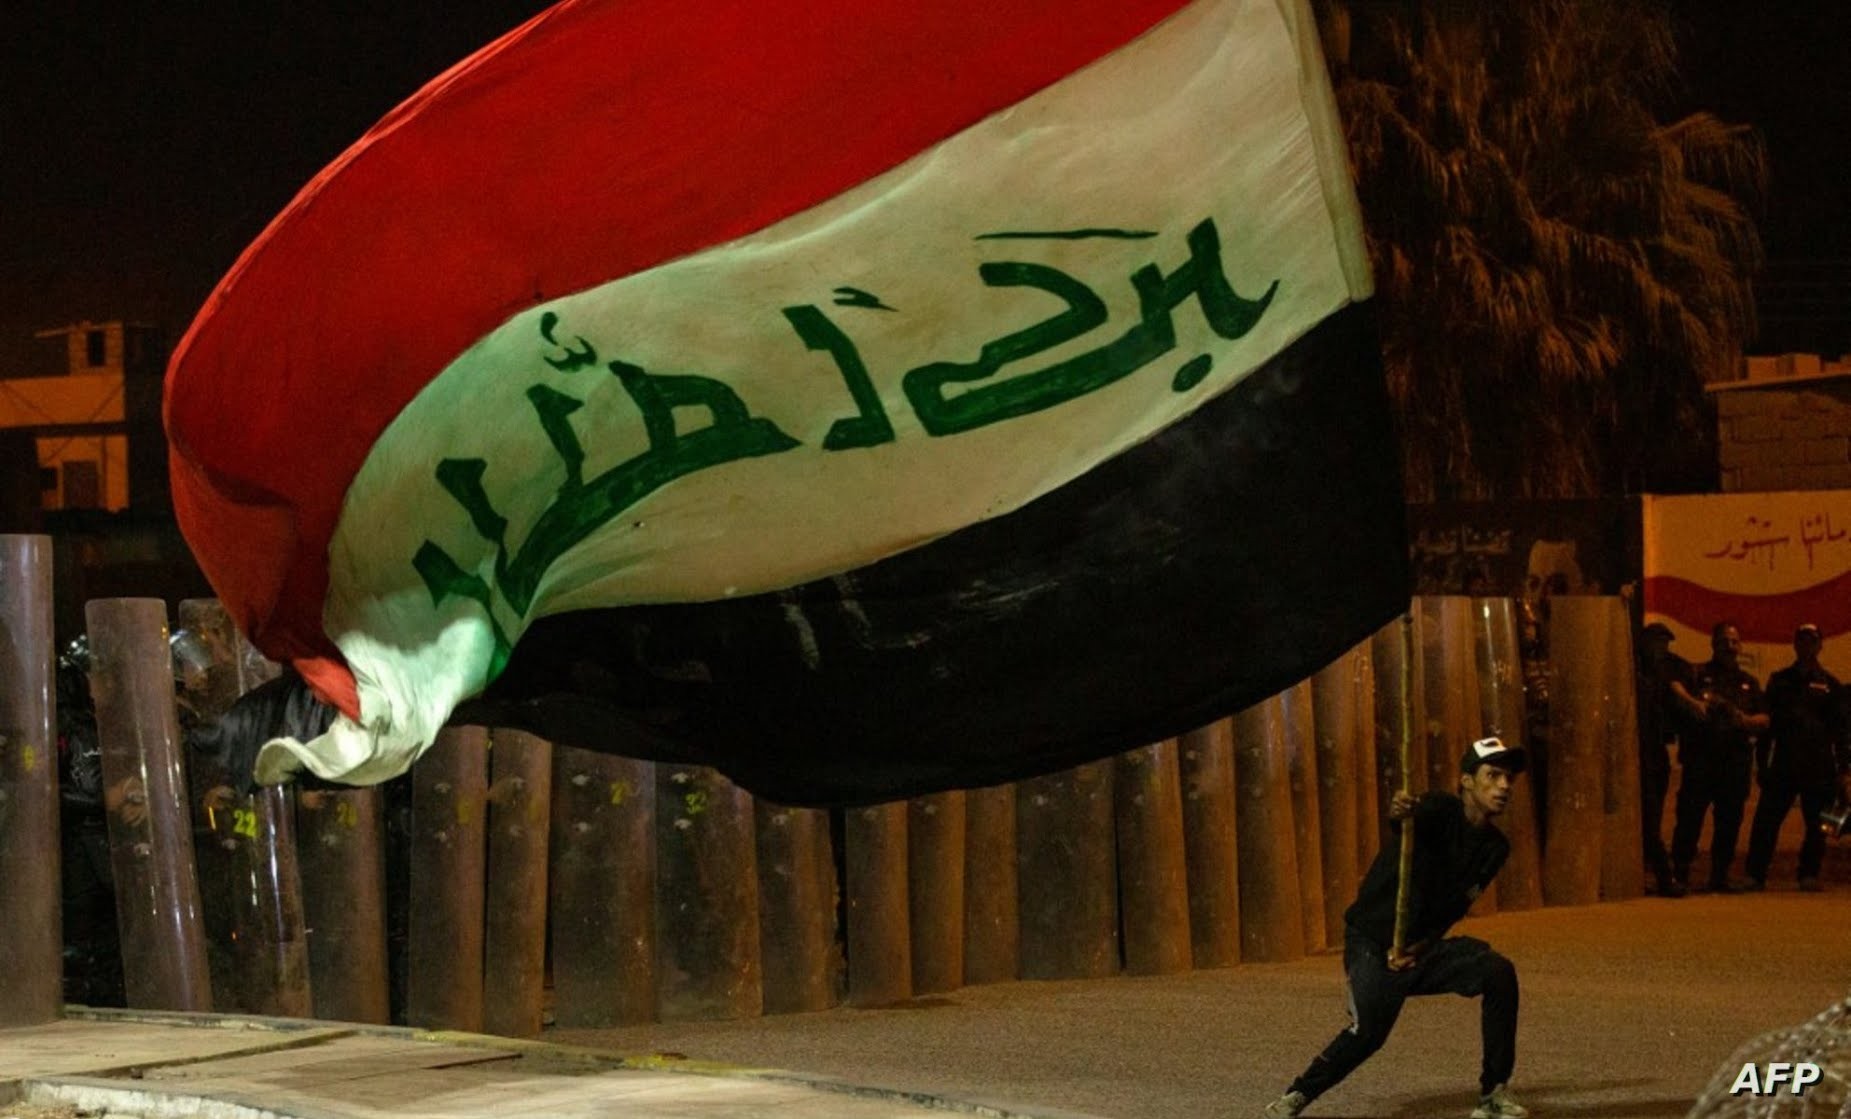 يواجه العراق عقدة سياسية حقيقية في ظل عدة محاولات فاشلة شهدها البرلمان العراقي خلال الأشهر الماضية لتشكيل حكومة جديدة